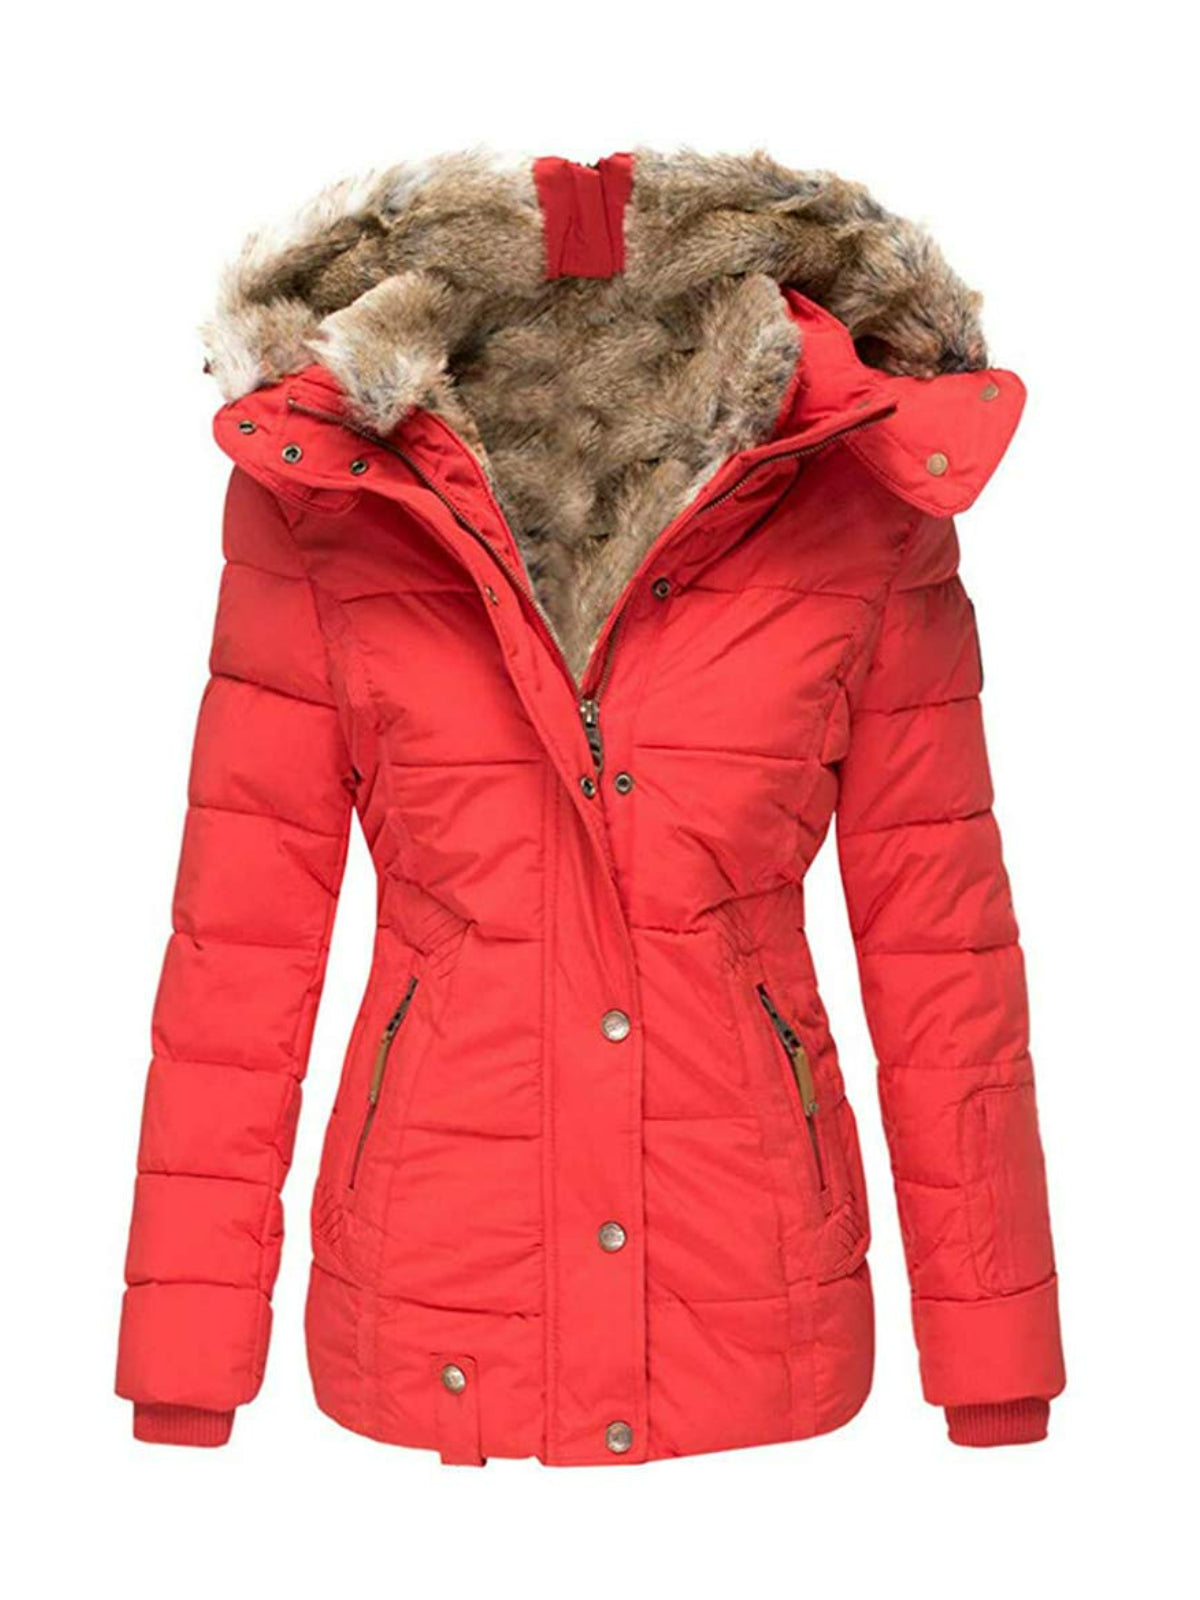 Women's Winter Black Hooded Faux Fur Overcoat Warm Windproof Lined Coa ...